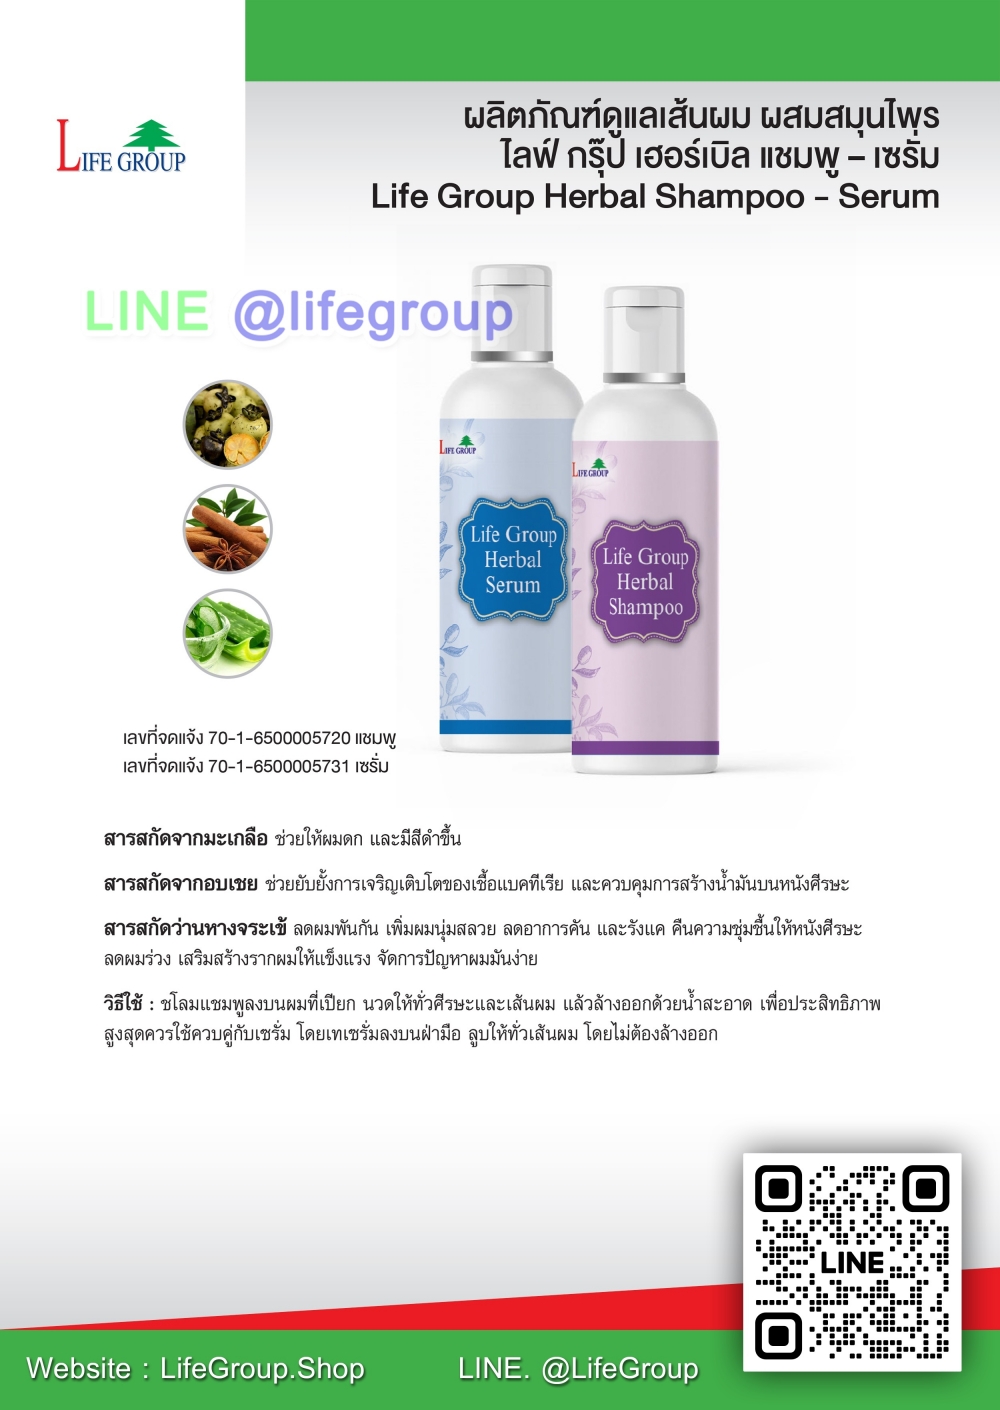 โลฟ์กรุ๊ป เฮอร์เบิล แชมพู - เซรั่ม Life Group Herbal Shampoo - Serum